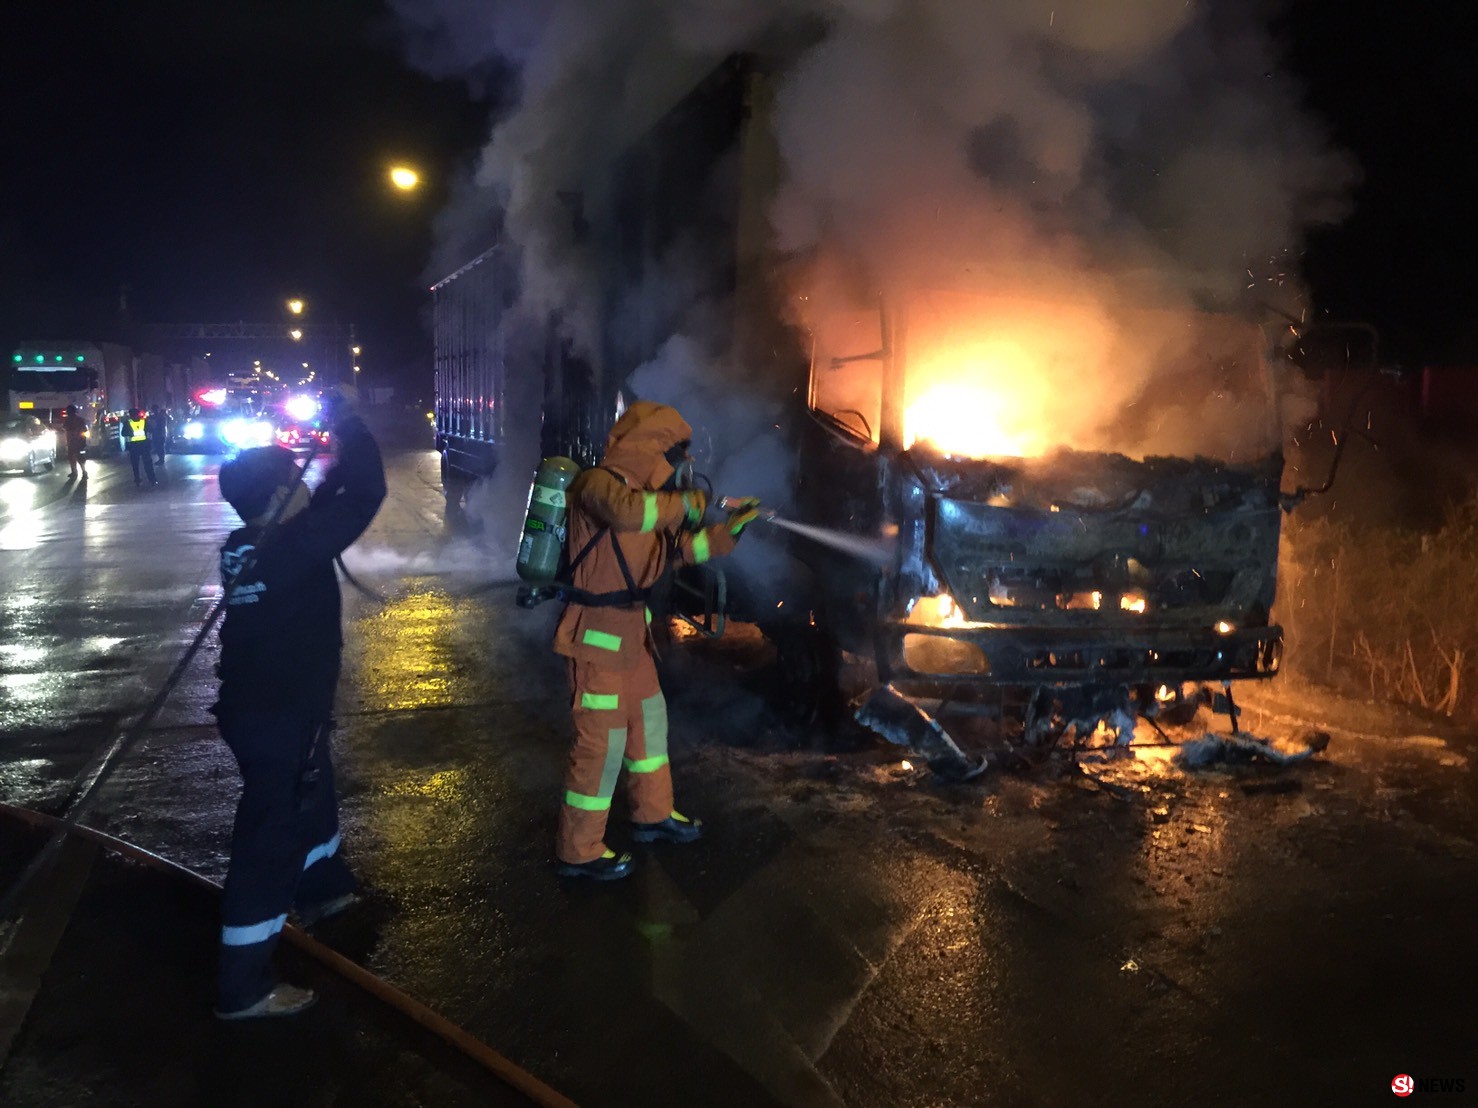 โคราช-ไฟไหม้รถบรรทุกพ่วง 18 ล้อ คนขับรอดตายหวุดหวิด